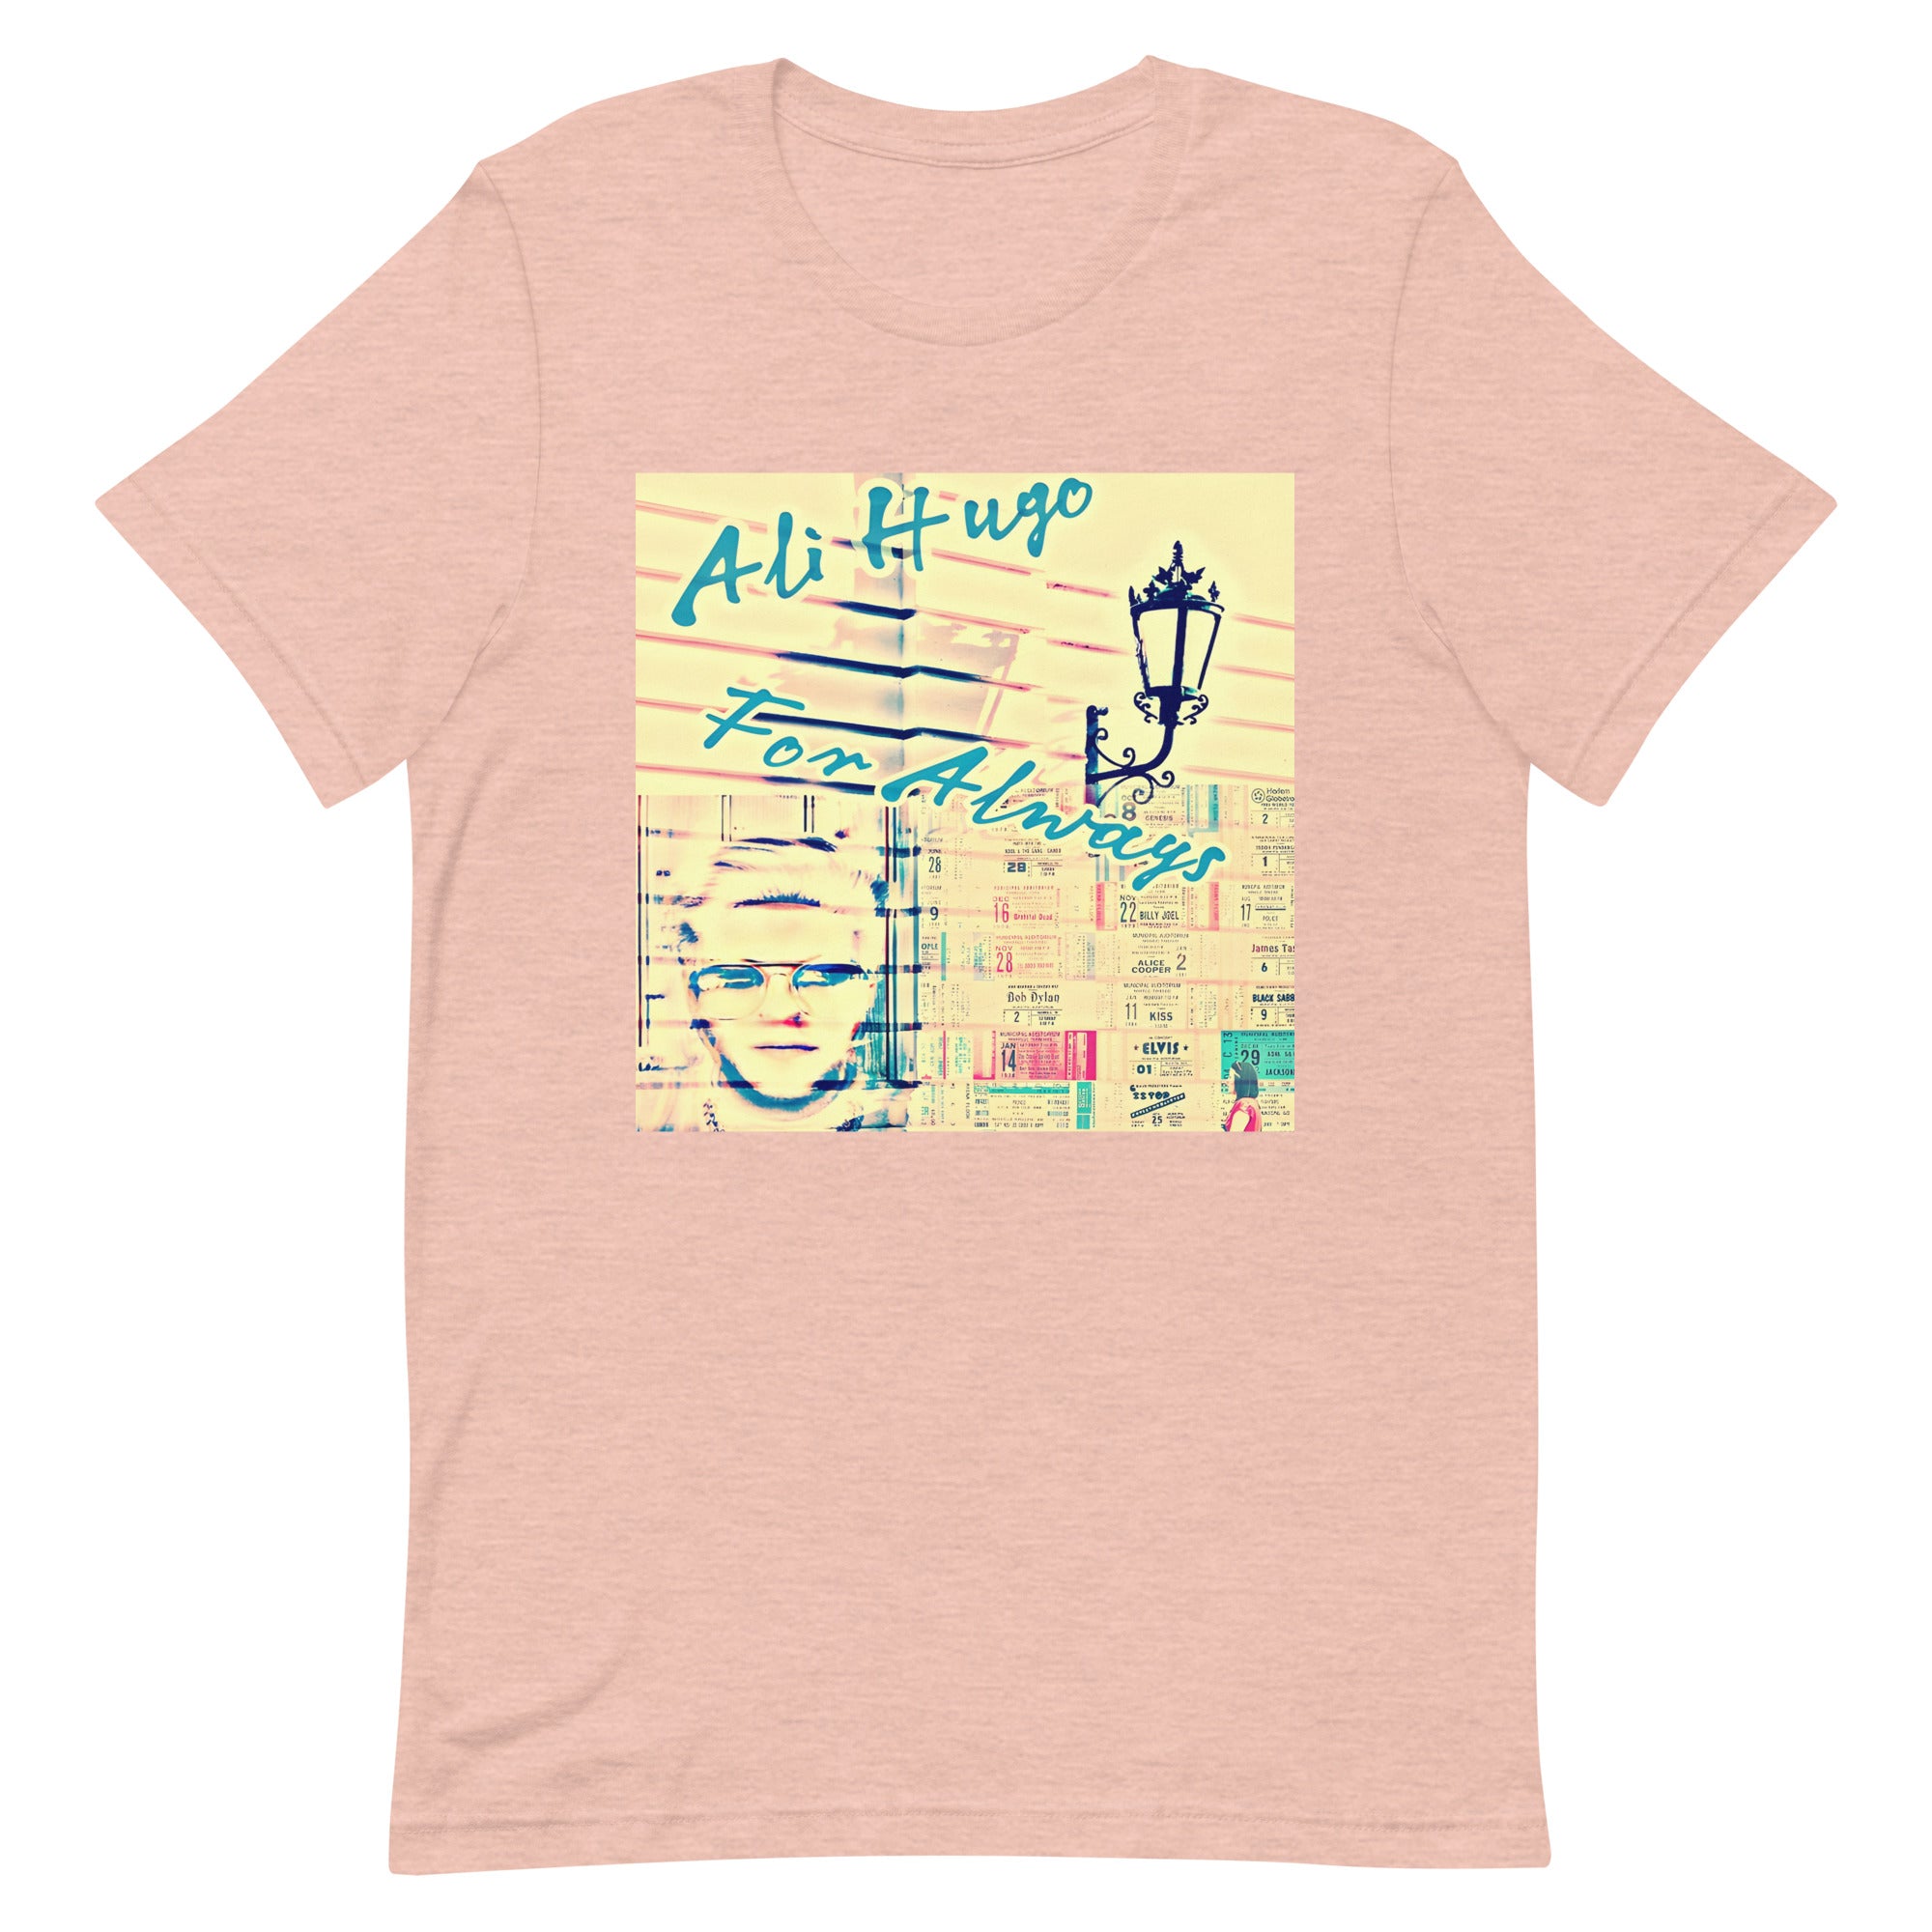 Ali Hugo - "For Always - Unisex t-shirt